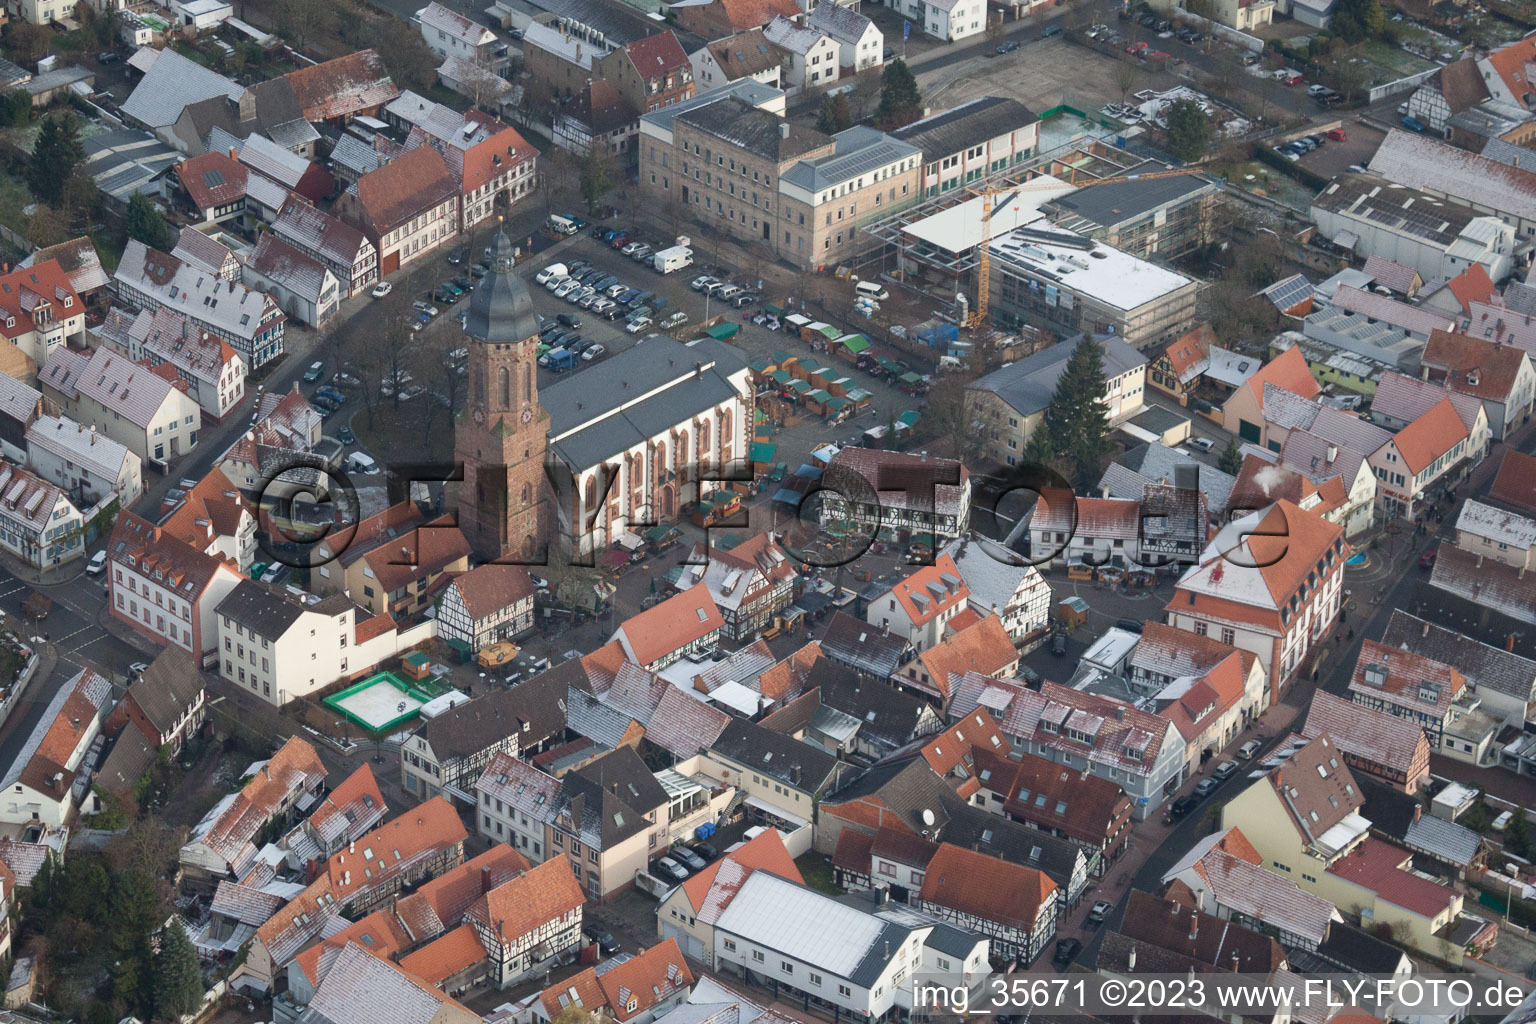 Vue aérienne de Marché de Noël à Plätzl et autour de l'église Saint-Georges à Kandel dans le département Rhénanie-Palatinat, Allemagne